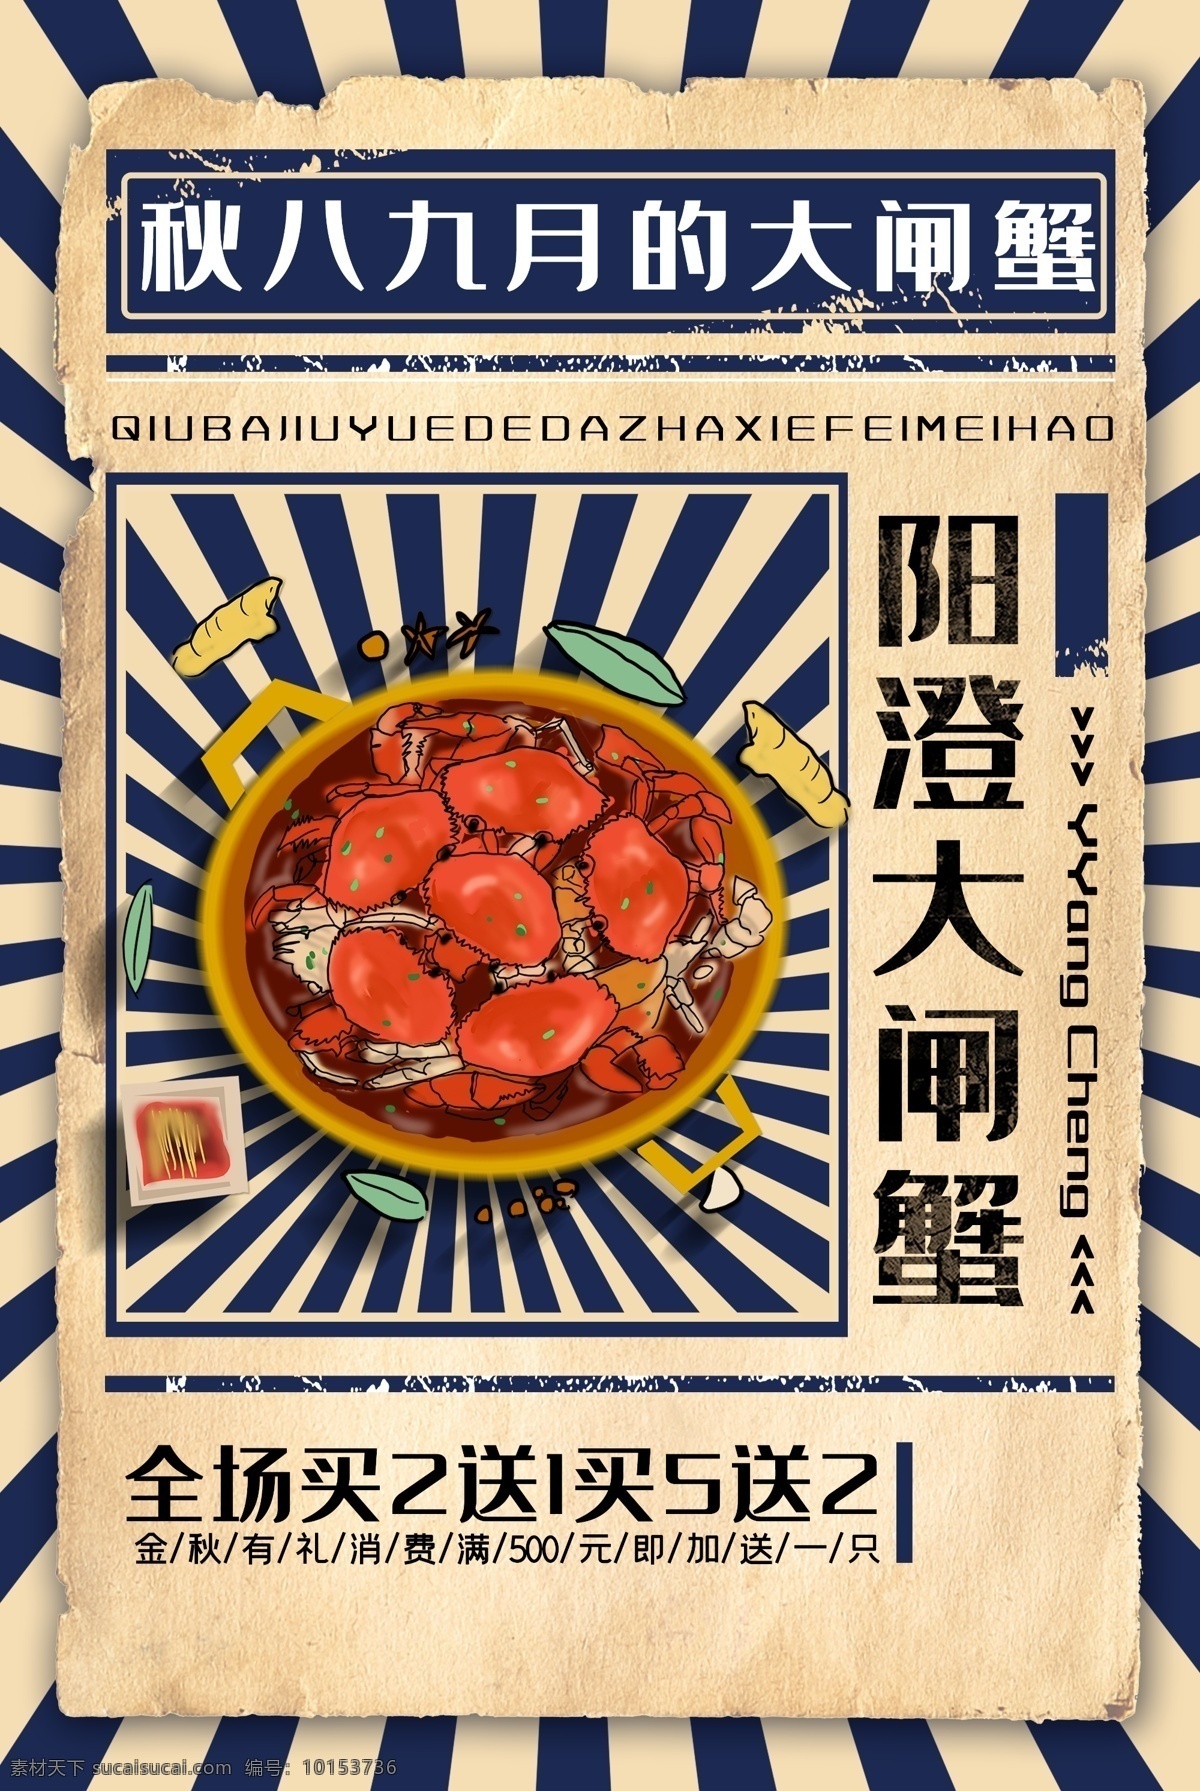 螃蟹 中秋 蟹 肥 套餐 活动 海报 展板 蟹肥